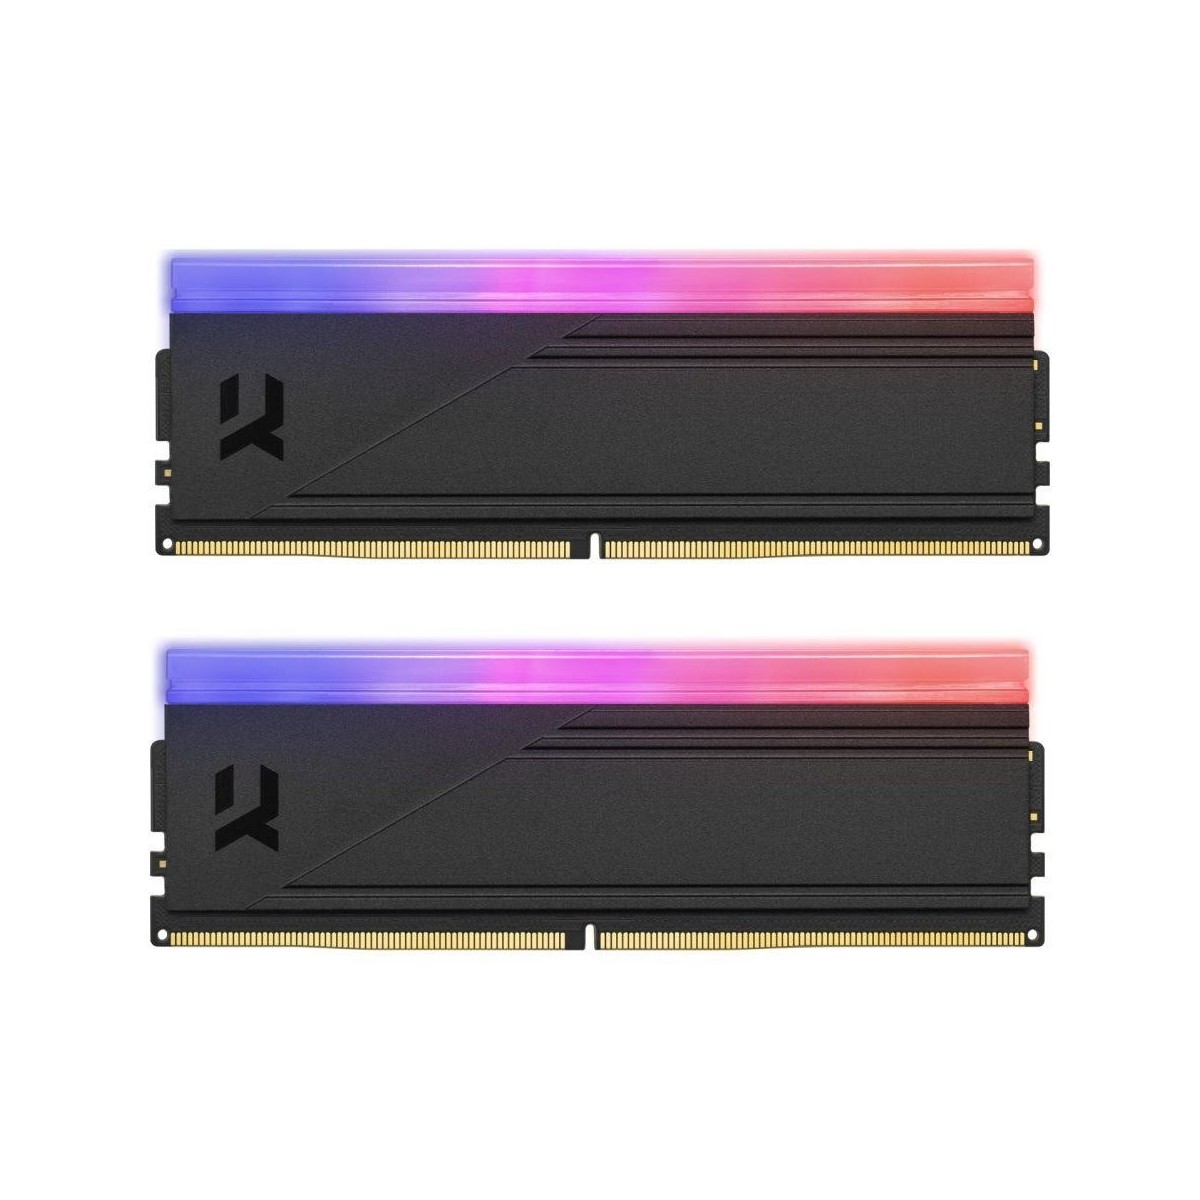 Pamięć DDR5 GOODRAM IRDM RGB 64GB (2x32GB) 6000MHz CL30